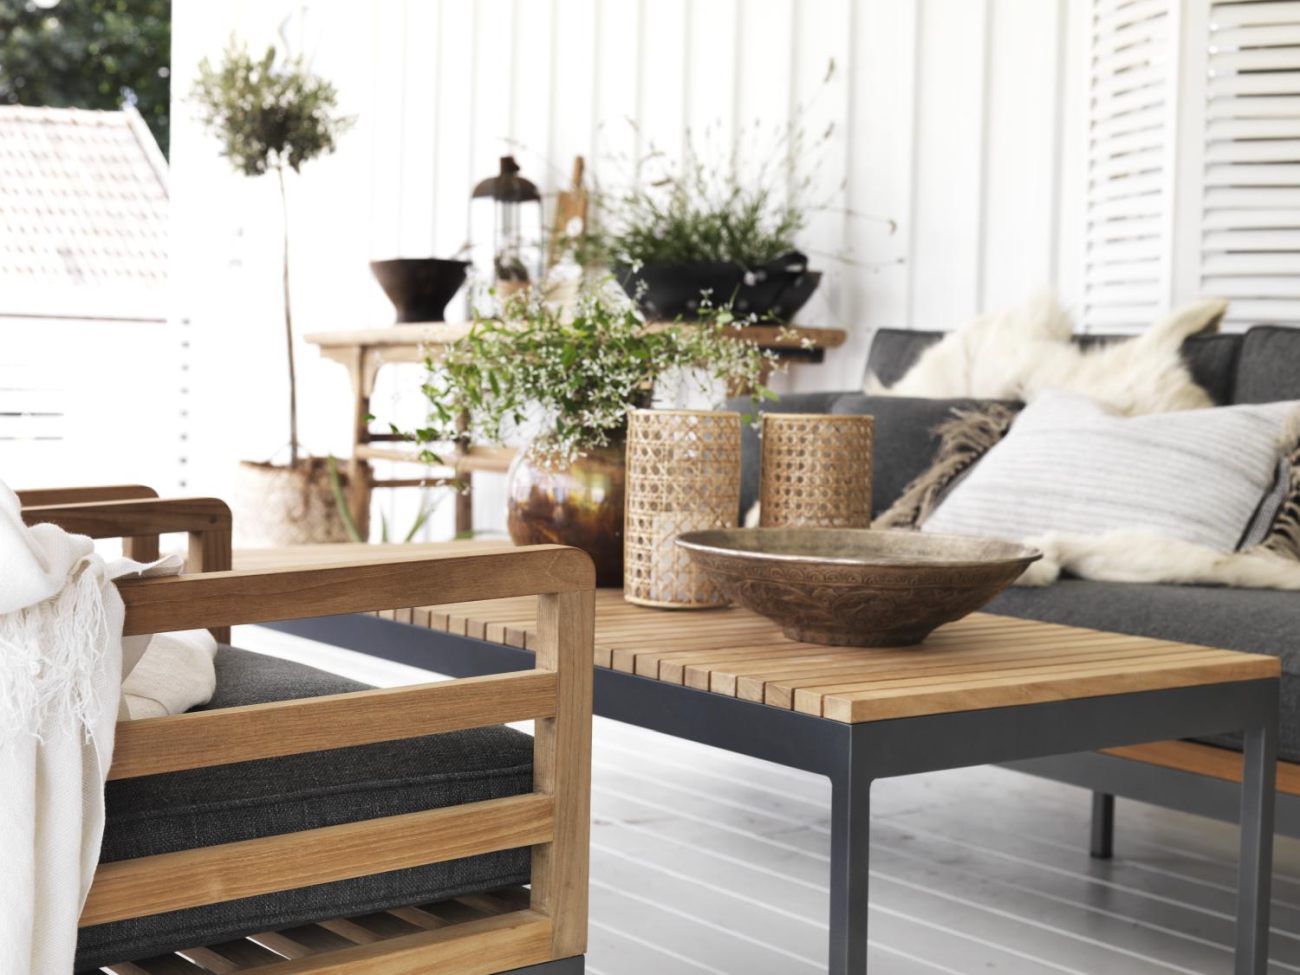 Der Gartencouchtisch Zalongo überzeugt mit seinem modernen Design. Gefertigt wurde die Tischplatte aus Teakholz, welche einen natürlichen Farbton besitzt. Das Gestell ist auch aus Metall und hat eine Anthrazit Farbe. Der Tisch besitzt einen Durchmesser vo